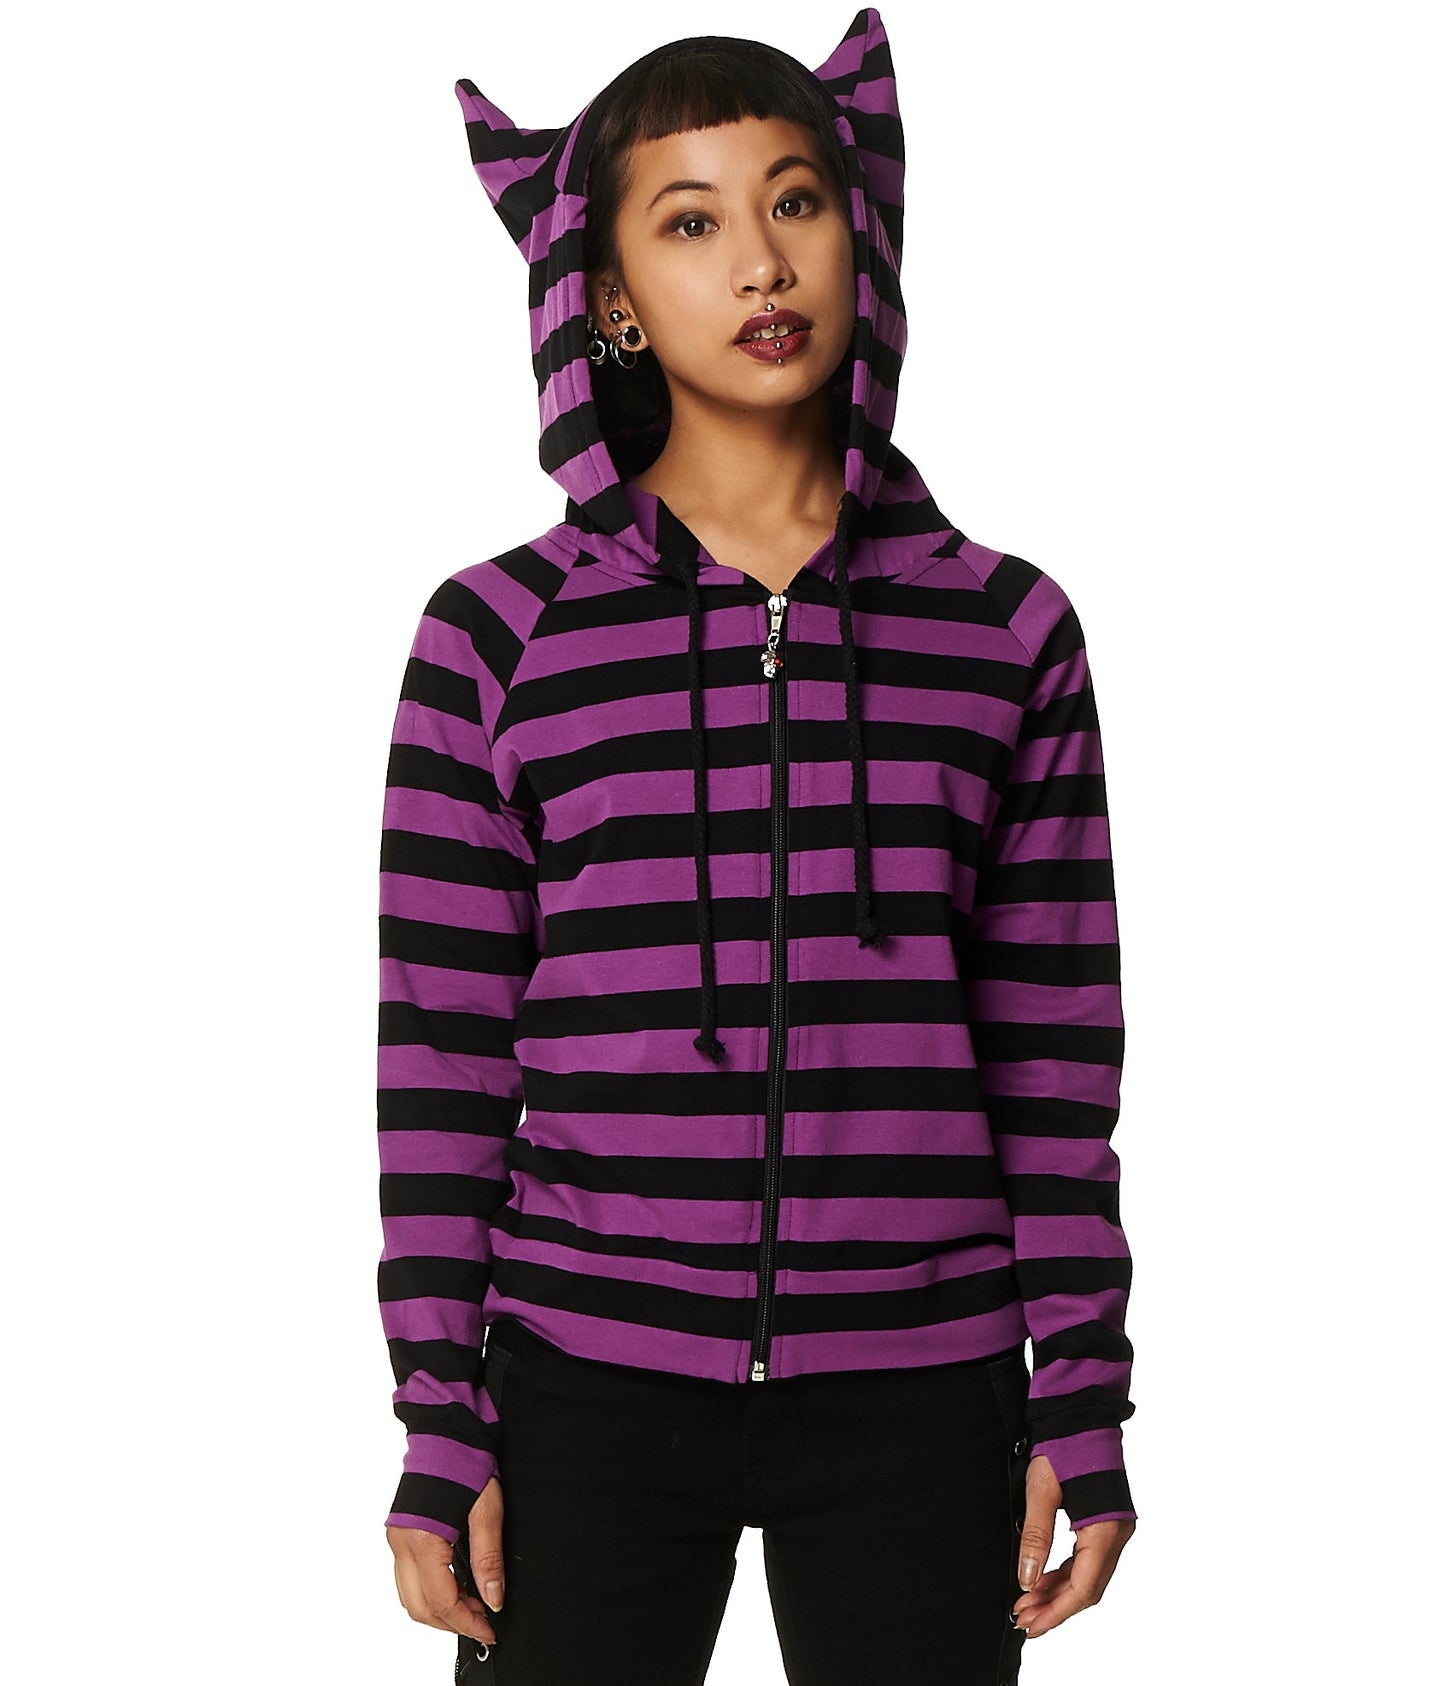 Alternative model in striped purple hoodie with cat ear hood.